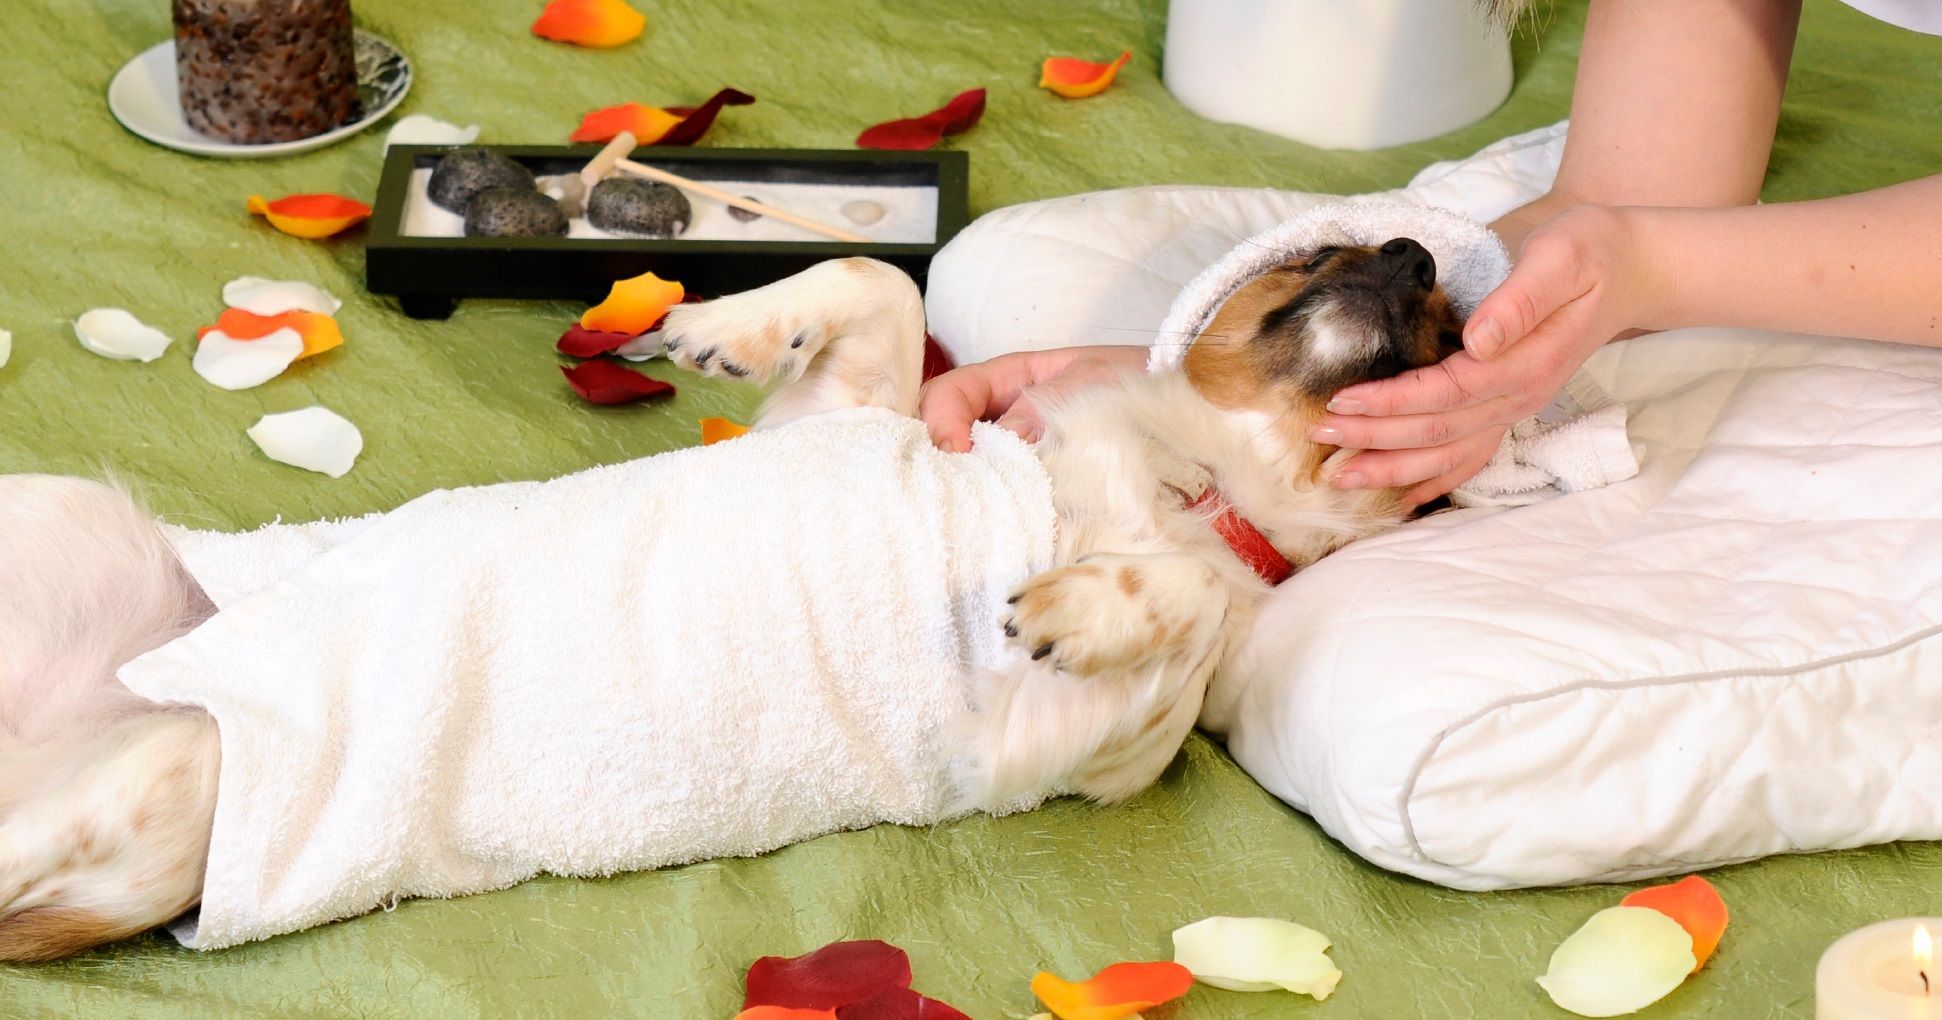 Massaggi per cani: come farli e perché fanno bene